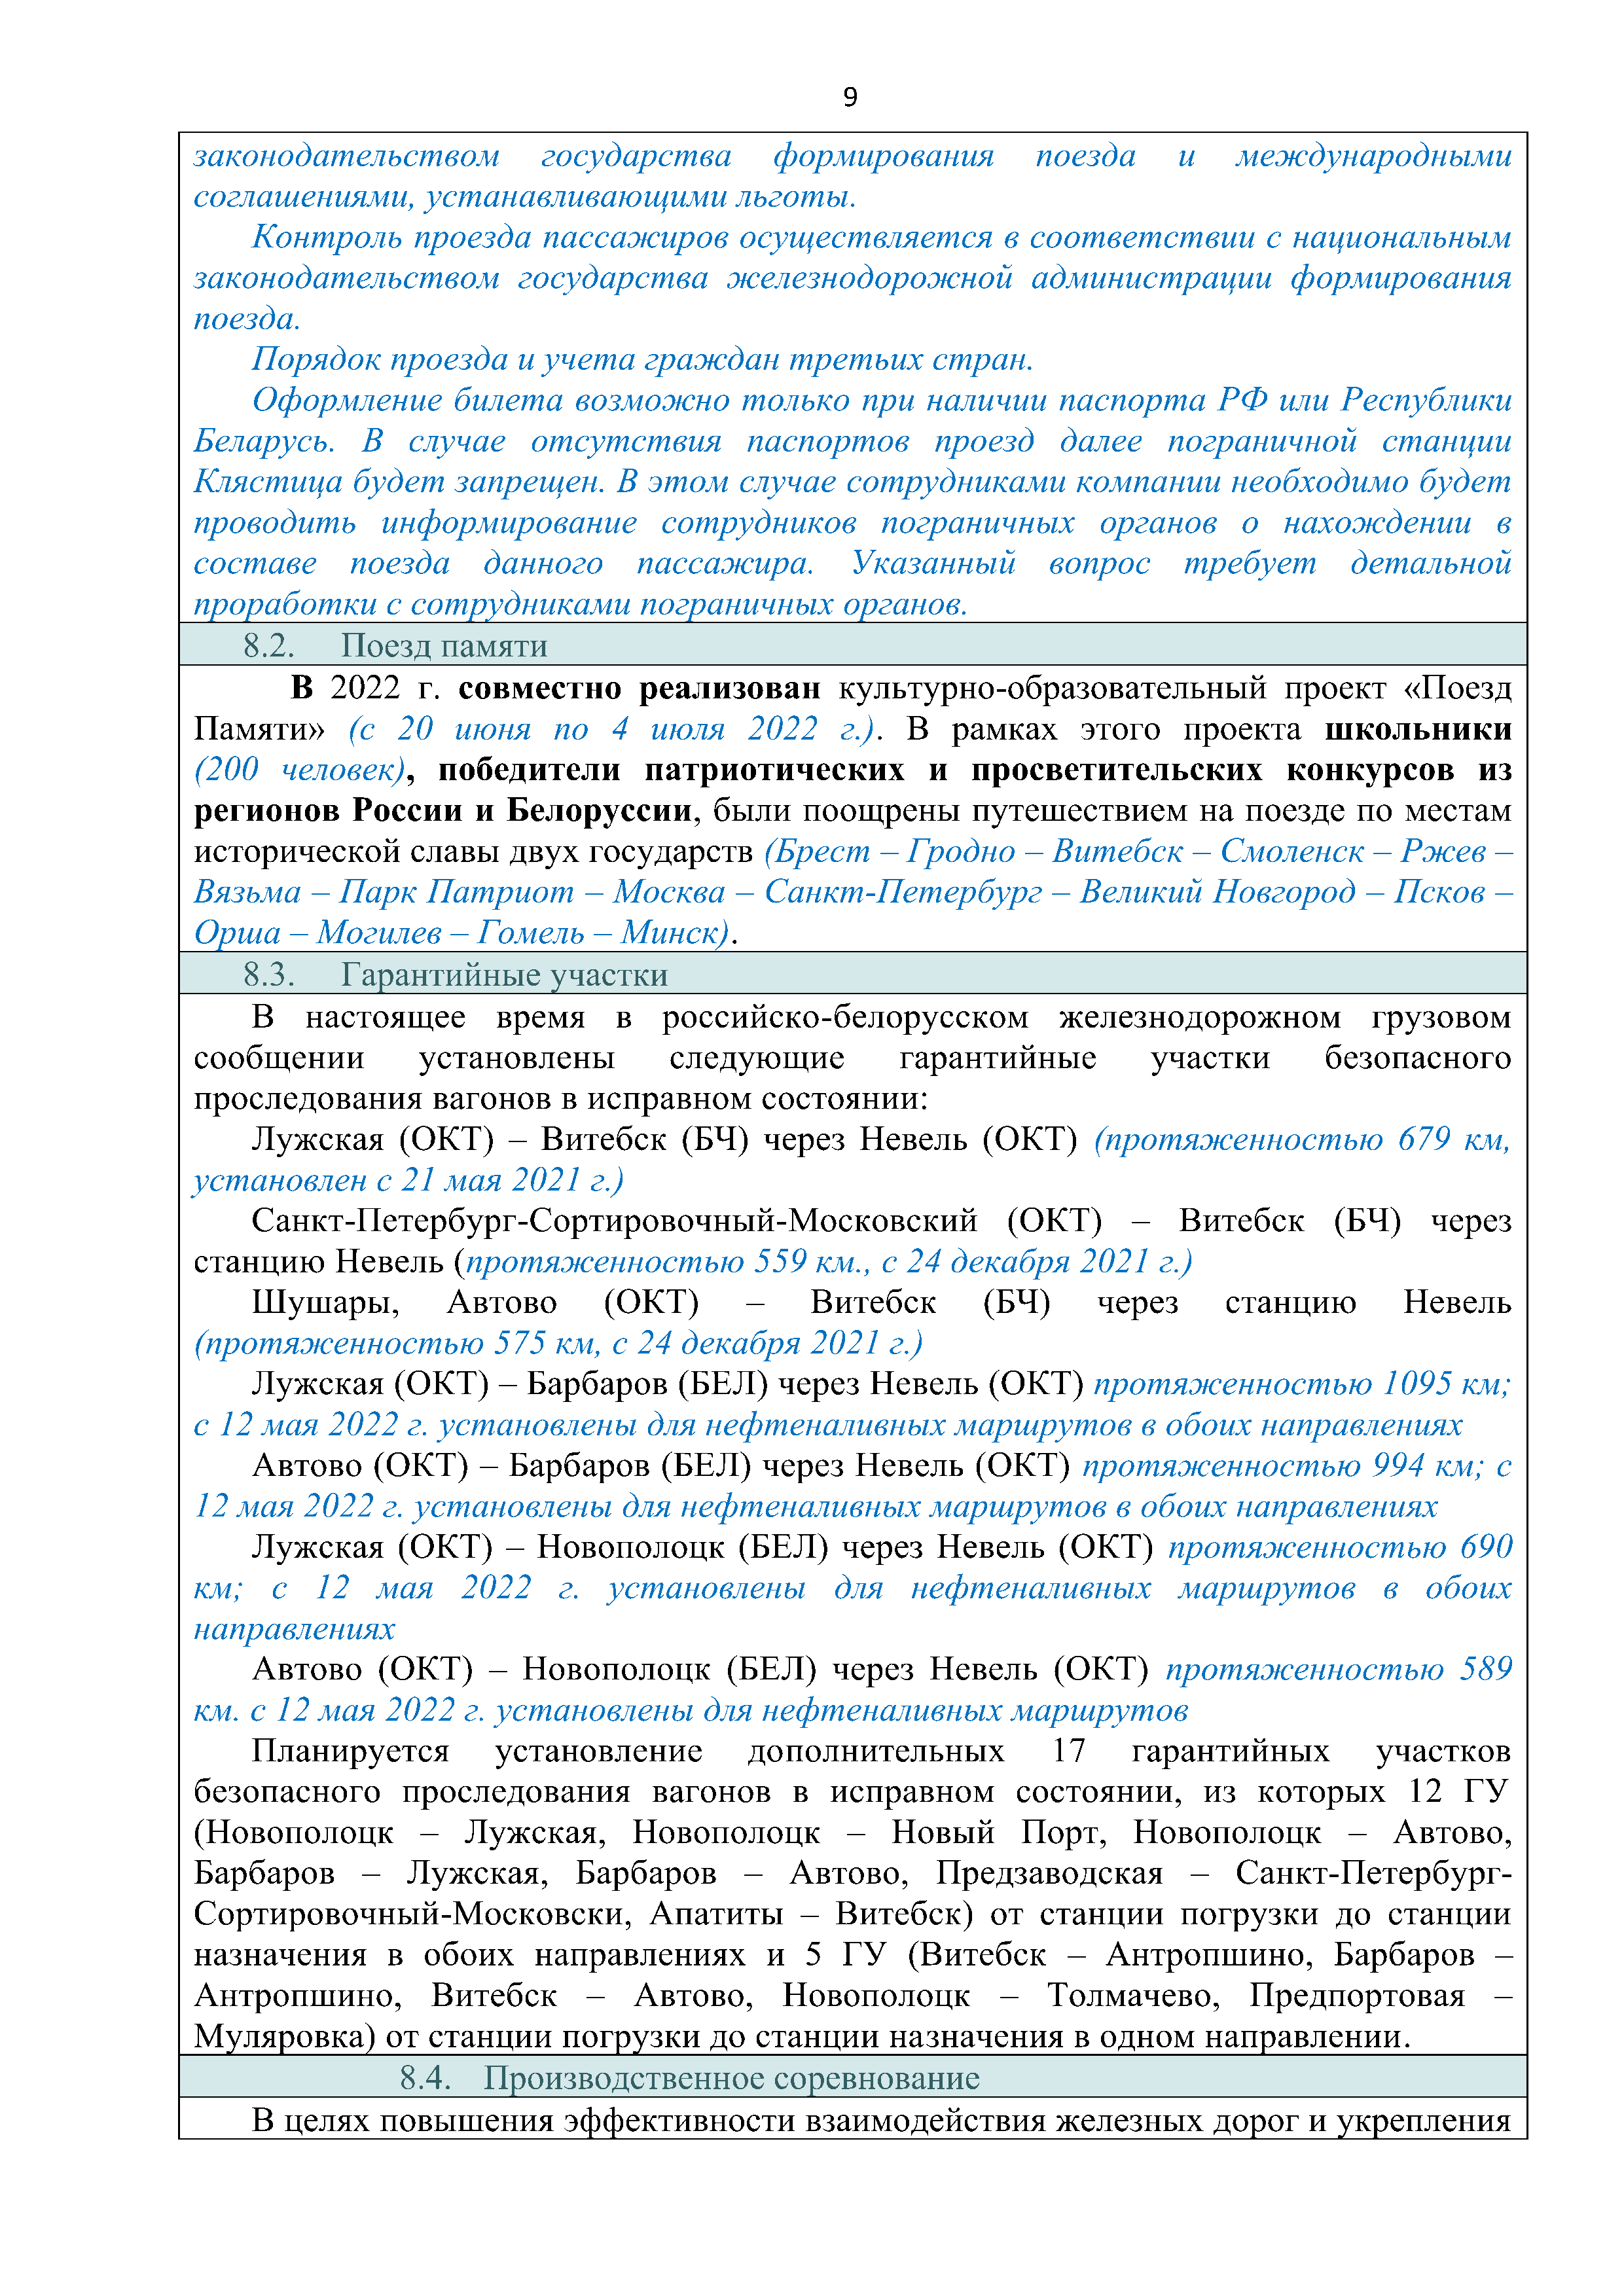 Справочная информация о взаимодействии ОАО «РЖД» с Республикой Беларусь (Страница 9)